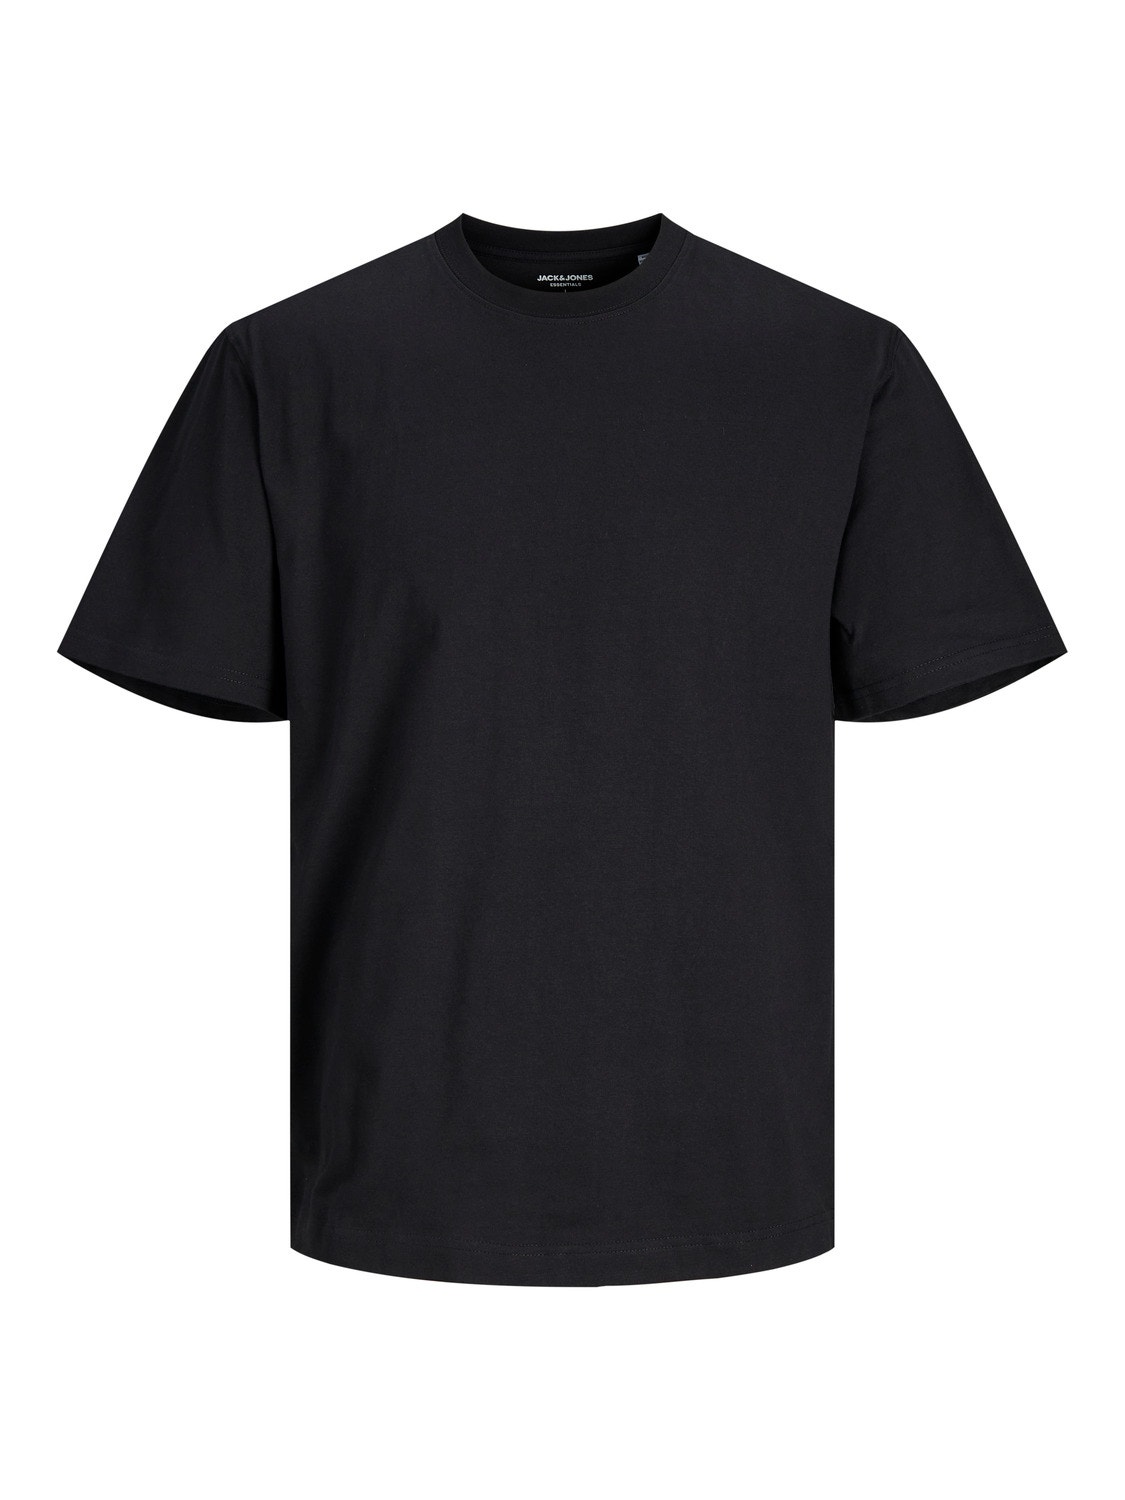 Jack & Jones Plain O-Neck T-shirt -Black - 12190467